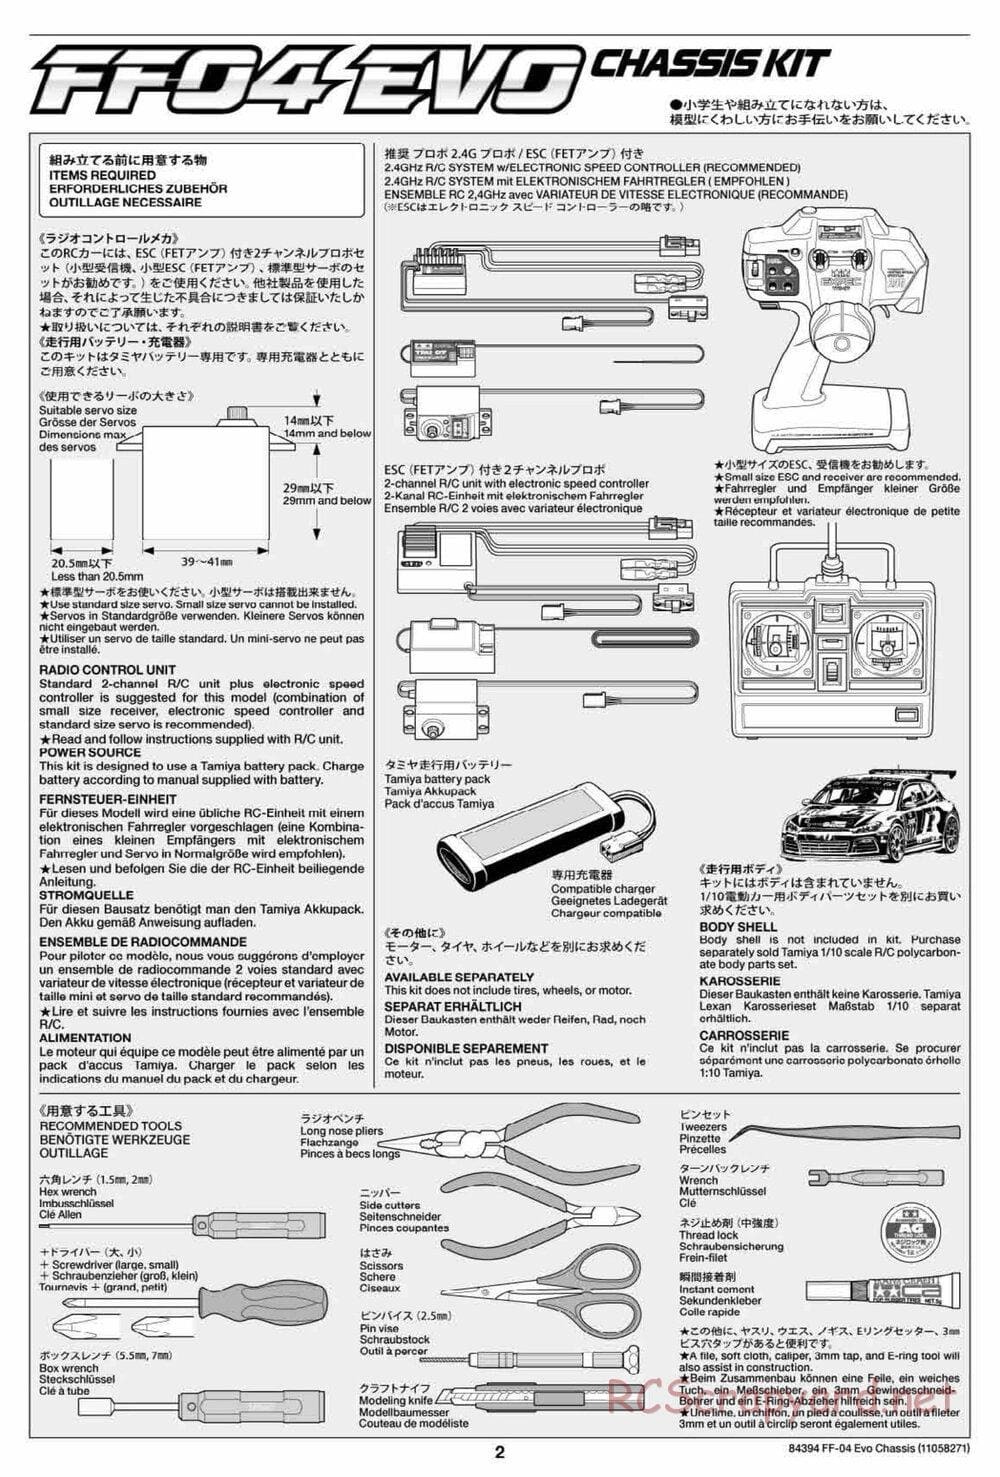 Tamiya - FF-04 Evo Chassis - Manual - Page 2